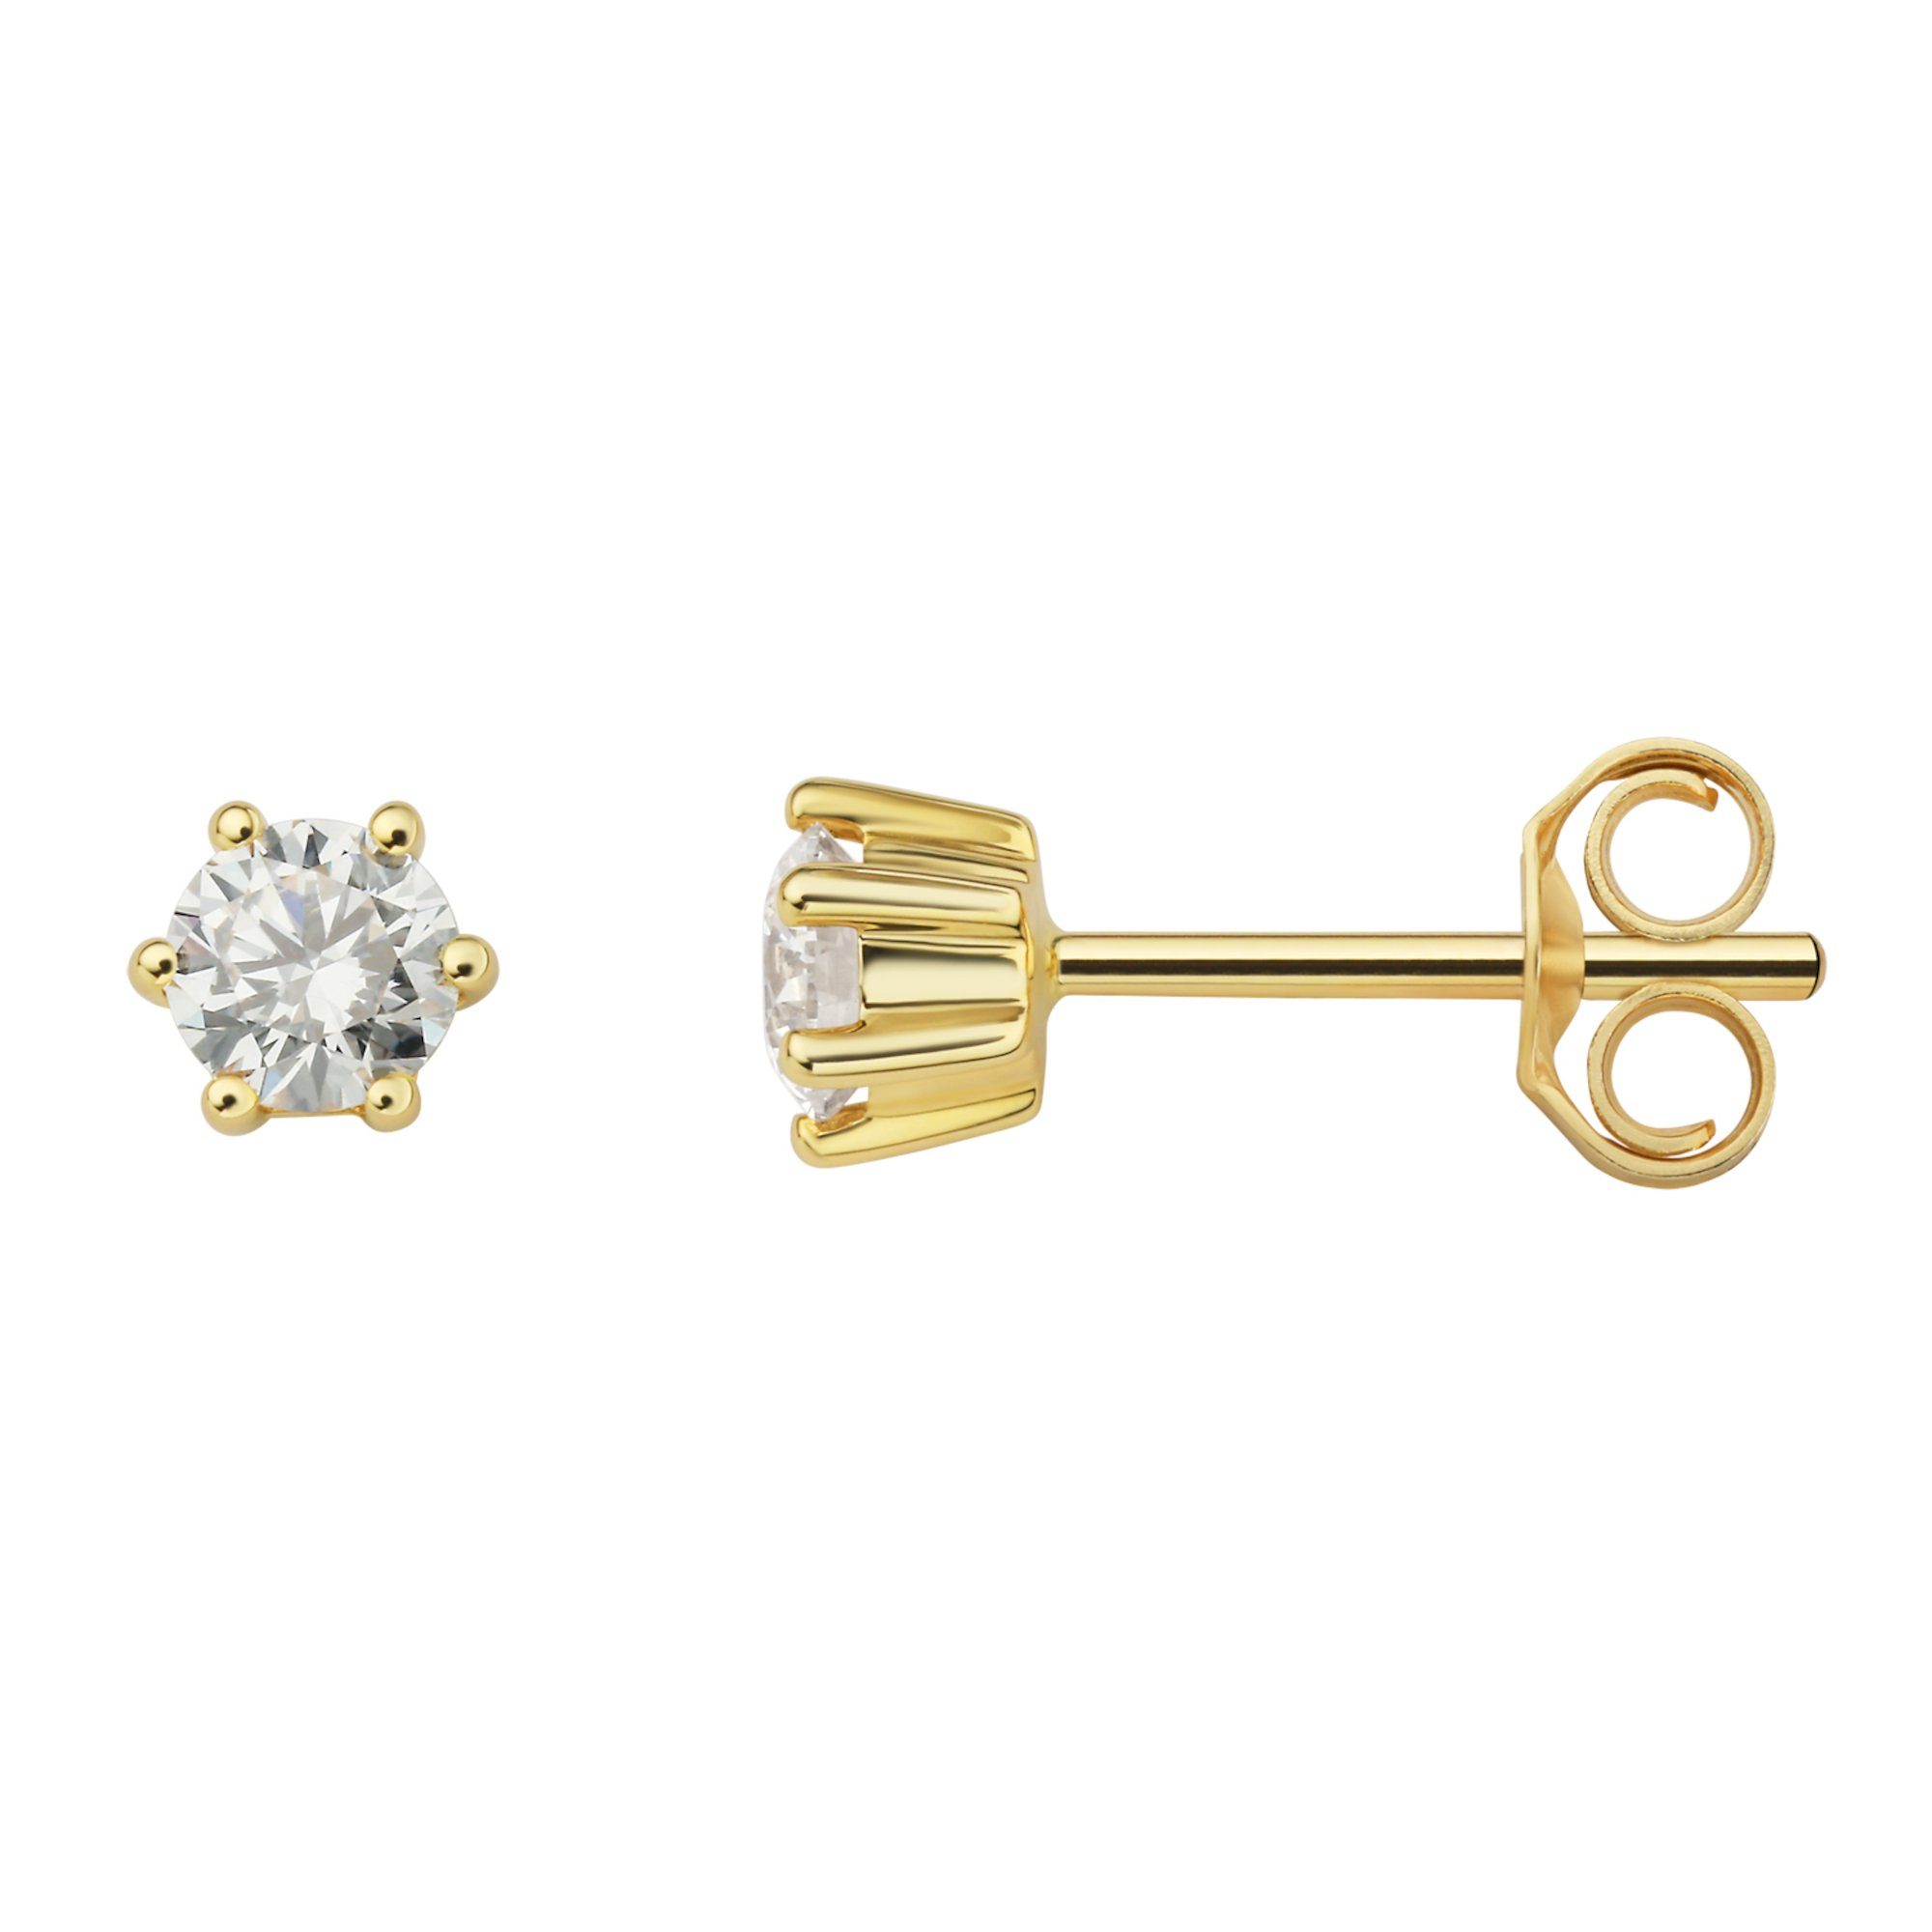 ONE ELEMENT Paar Ohrstecker 0.4 ct Diamant Brillant Ohrringe Ohrstecker aus 585 Gelbgold, Damen Gold Schmuck